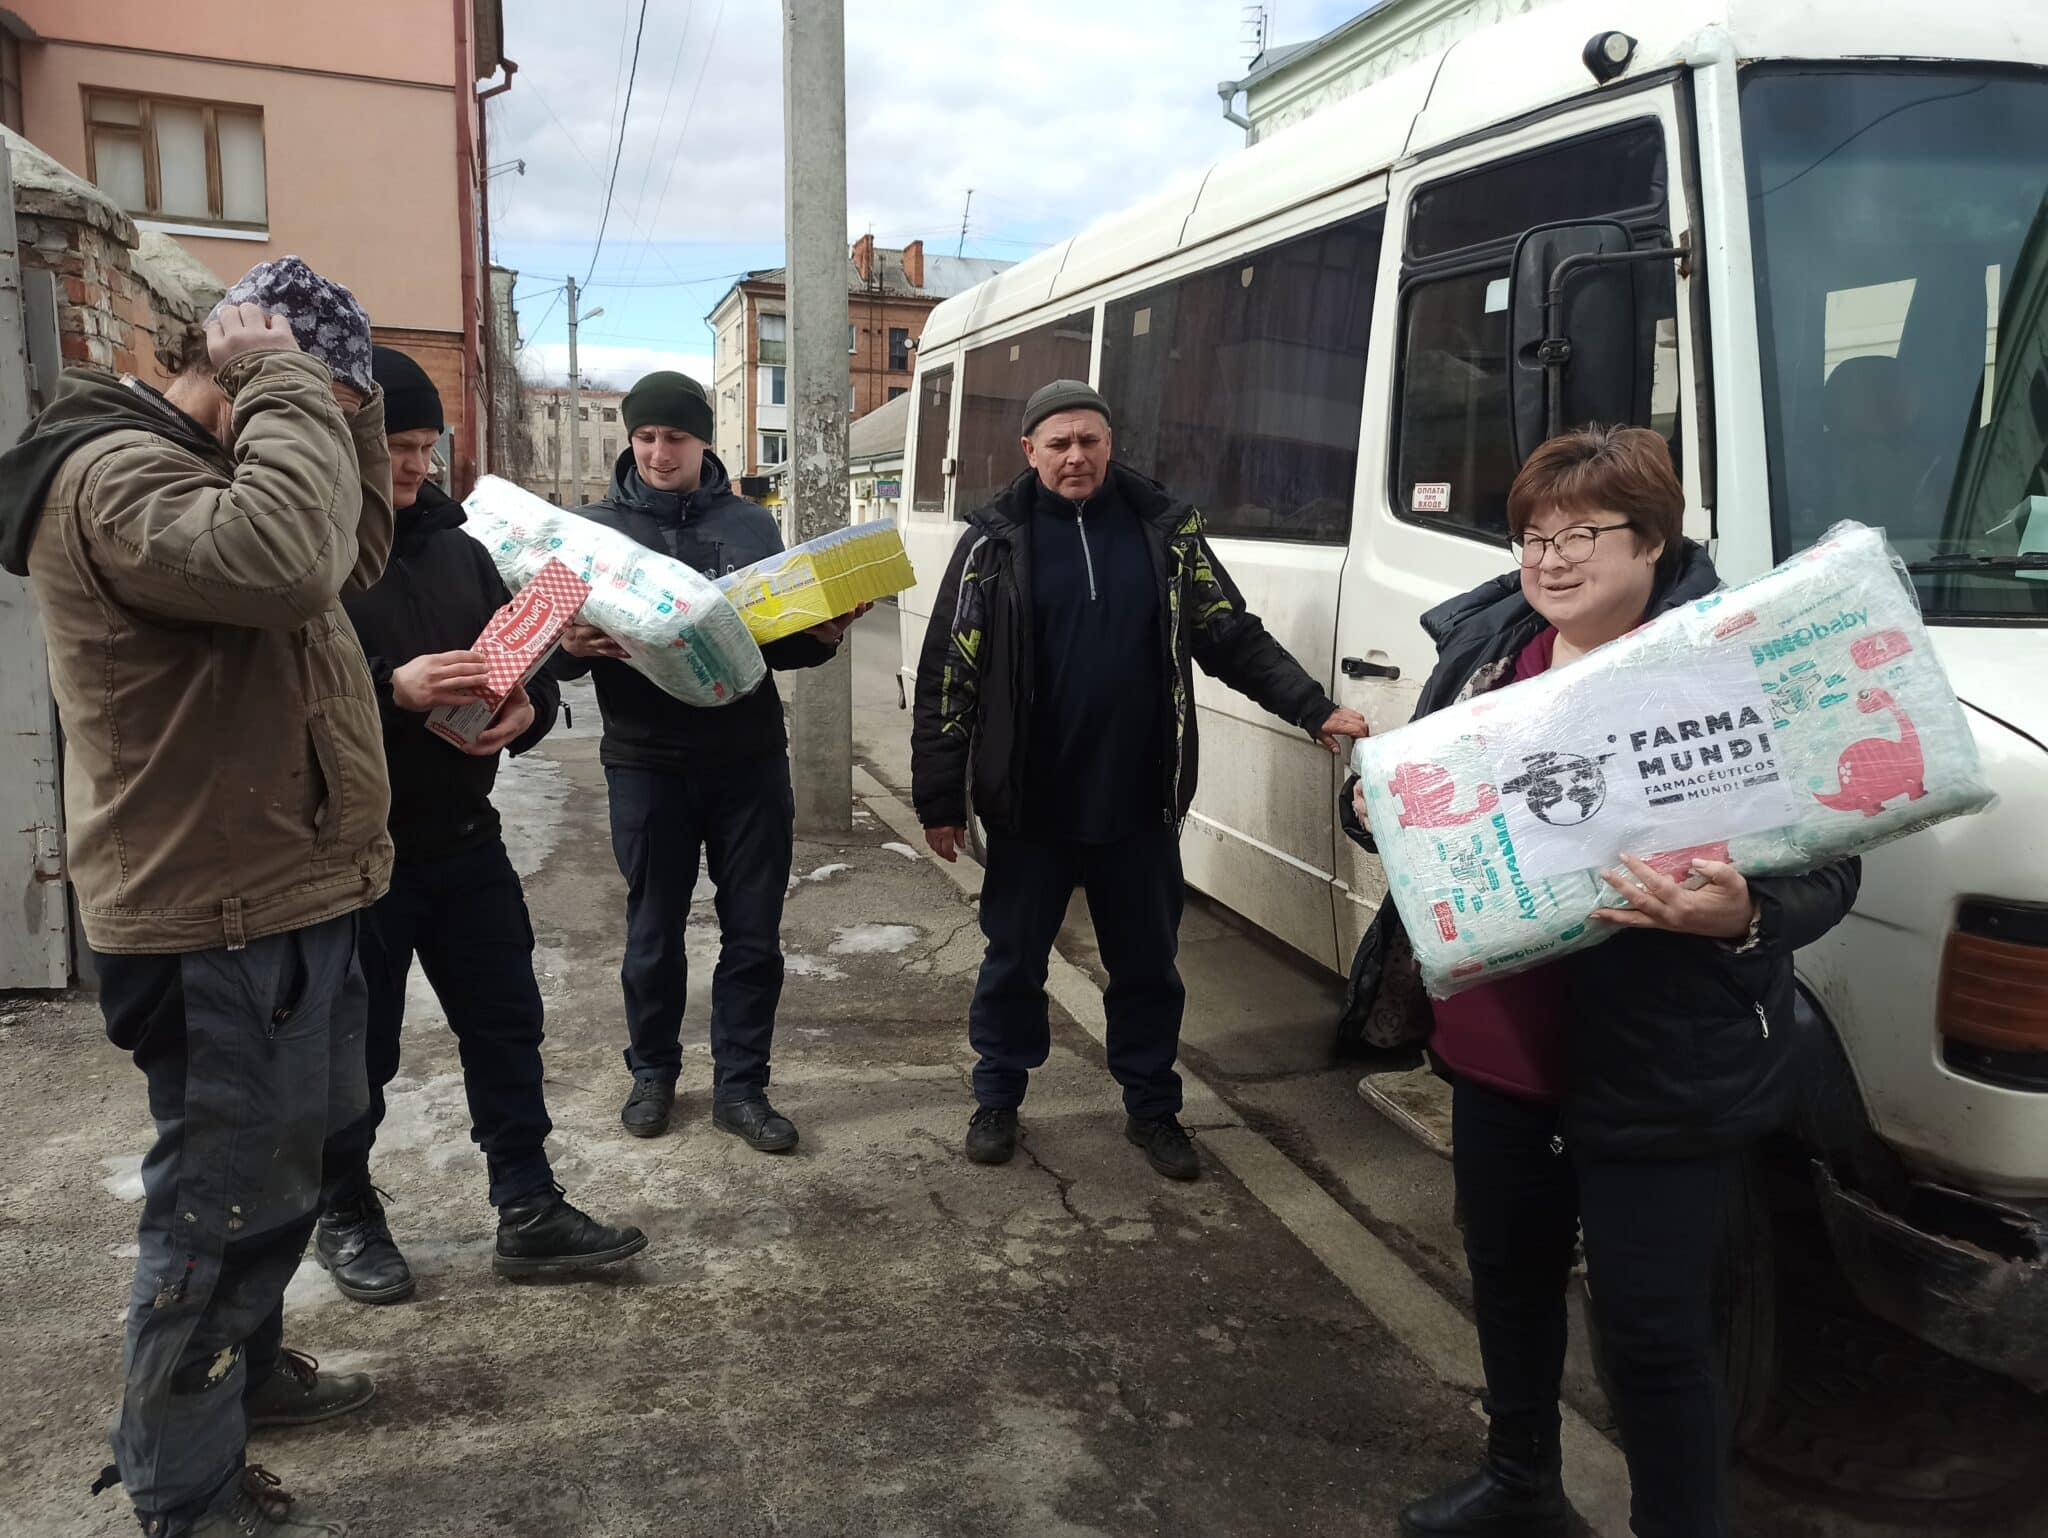 La experiencia de Ucrania, alianzas y especialización para una acción humanitaria eficaz